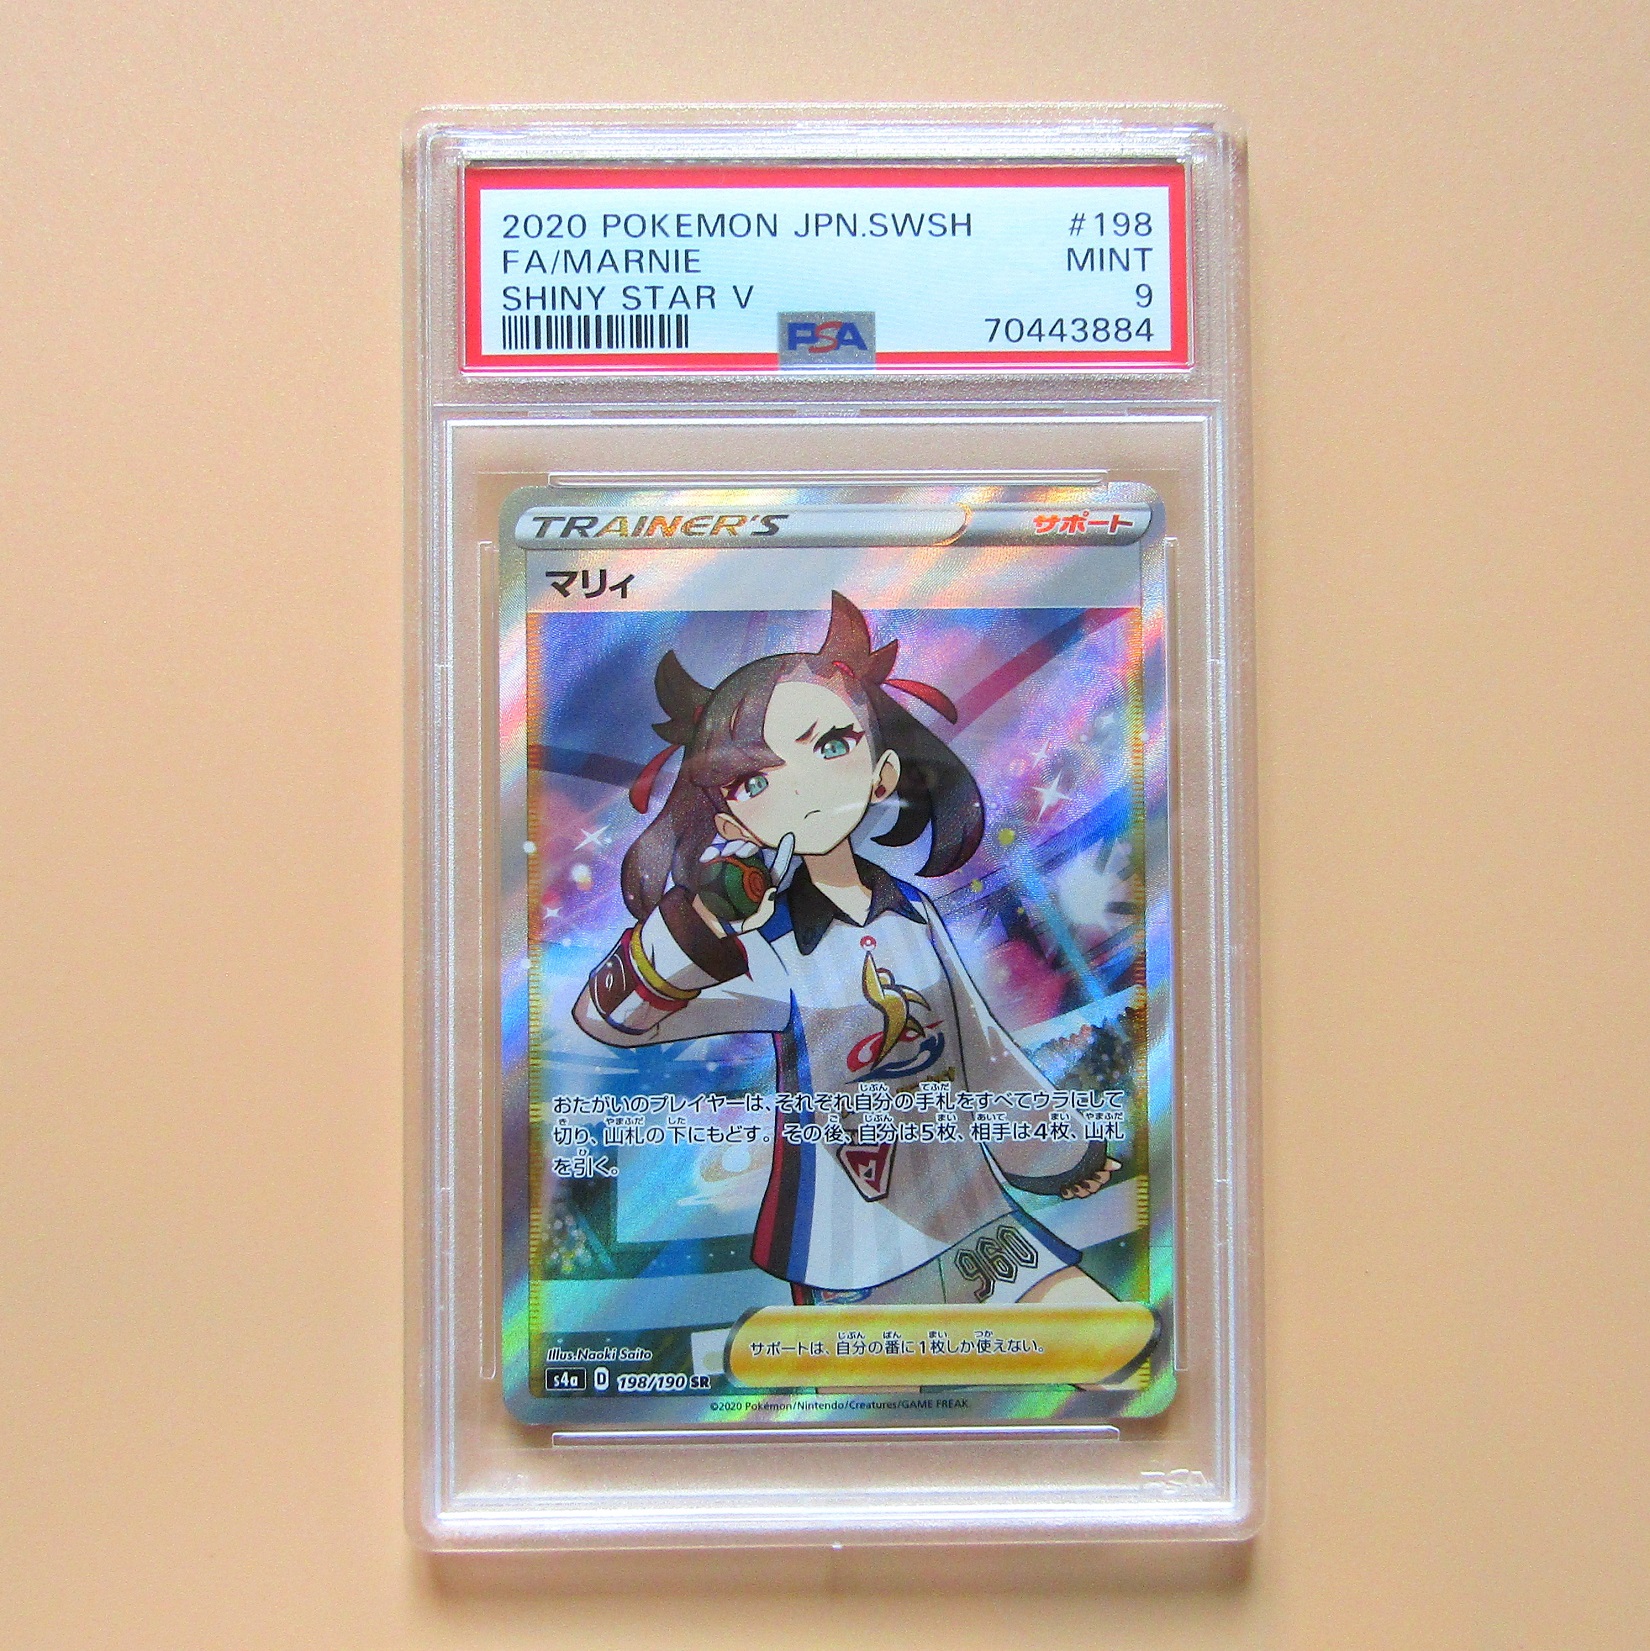 Pokémon card. Marnie s4a 198 Japanese Shiny Star V. PSA 10